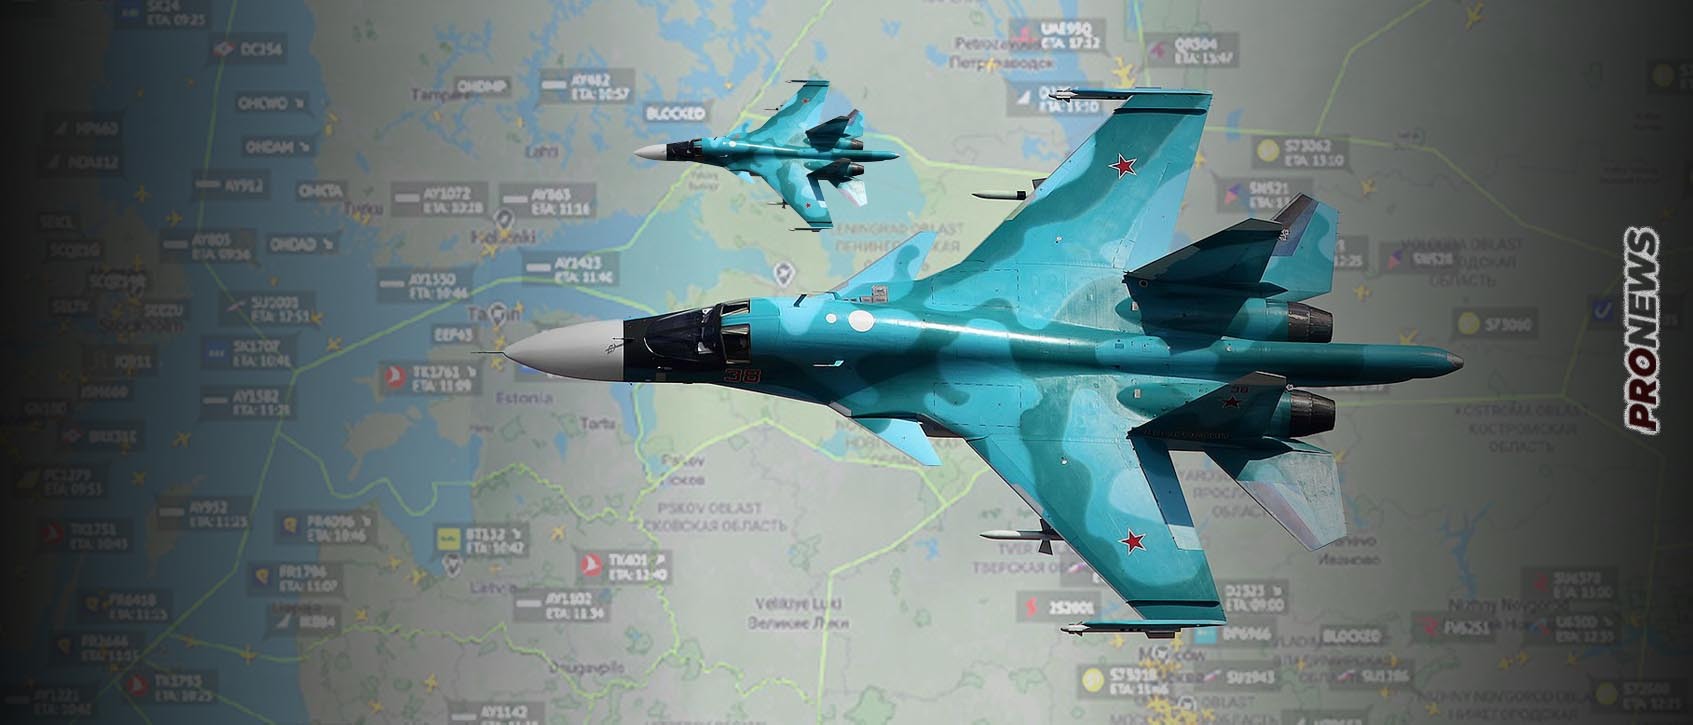 Αγία Πετρούπολη: Μυστήριο σήμα για ΑΤΙΑ ή ουκρανικά drones – Οι πτήσεις διακόπηκαν για μία ώρα (upd)